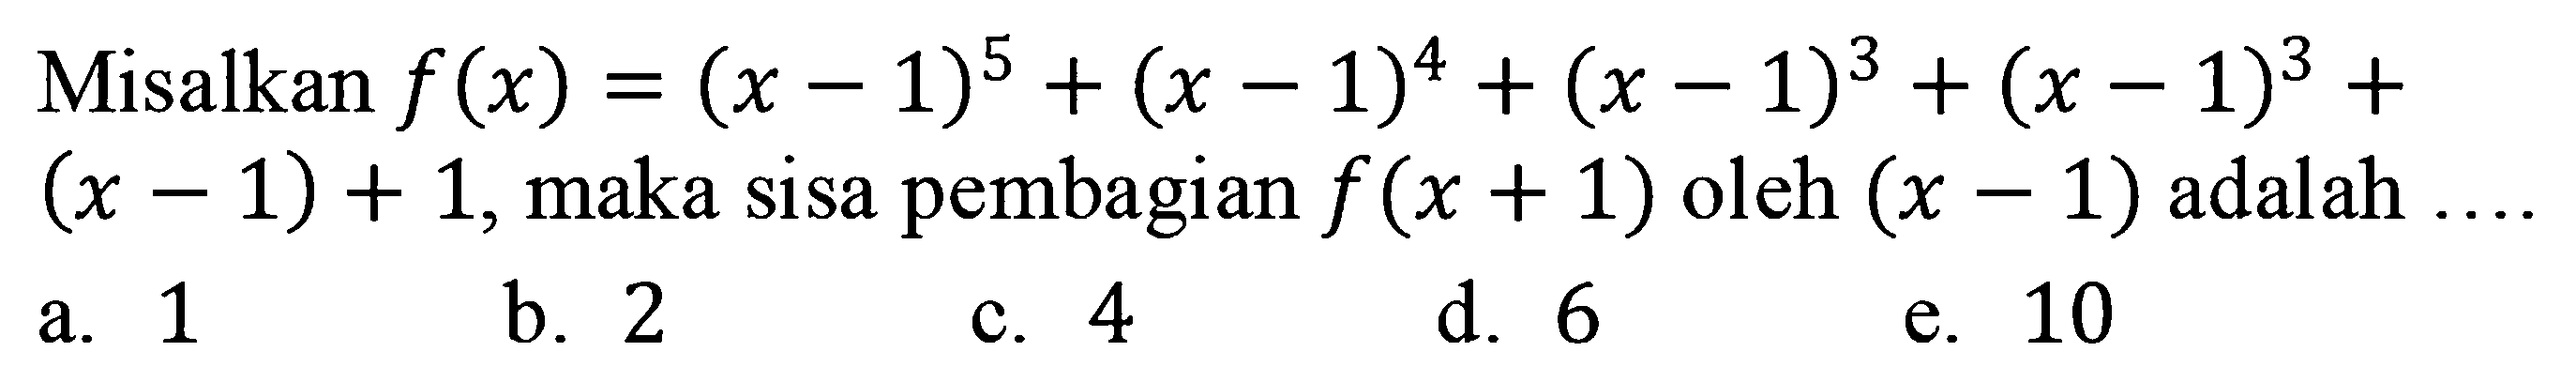 Misalkan f(x)=(x-1)^5+(x-1)^4+(x-1)^3+(x-1)^3+(x-1)+1, maka sisa pembagian f(x+1) oleh (x-1) adalah....